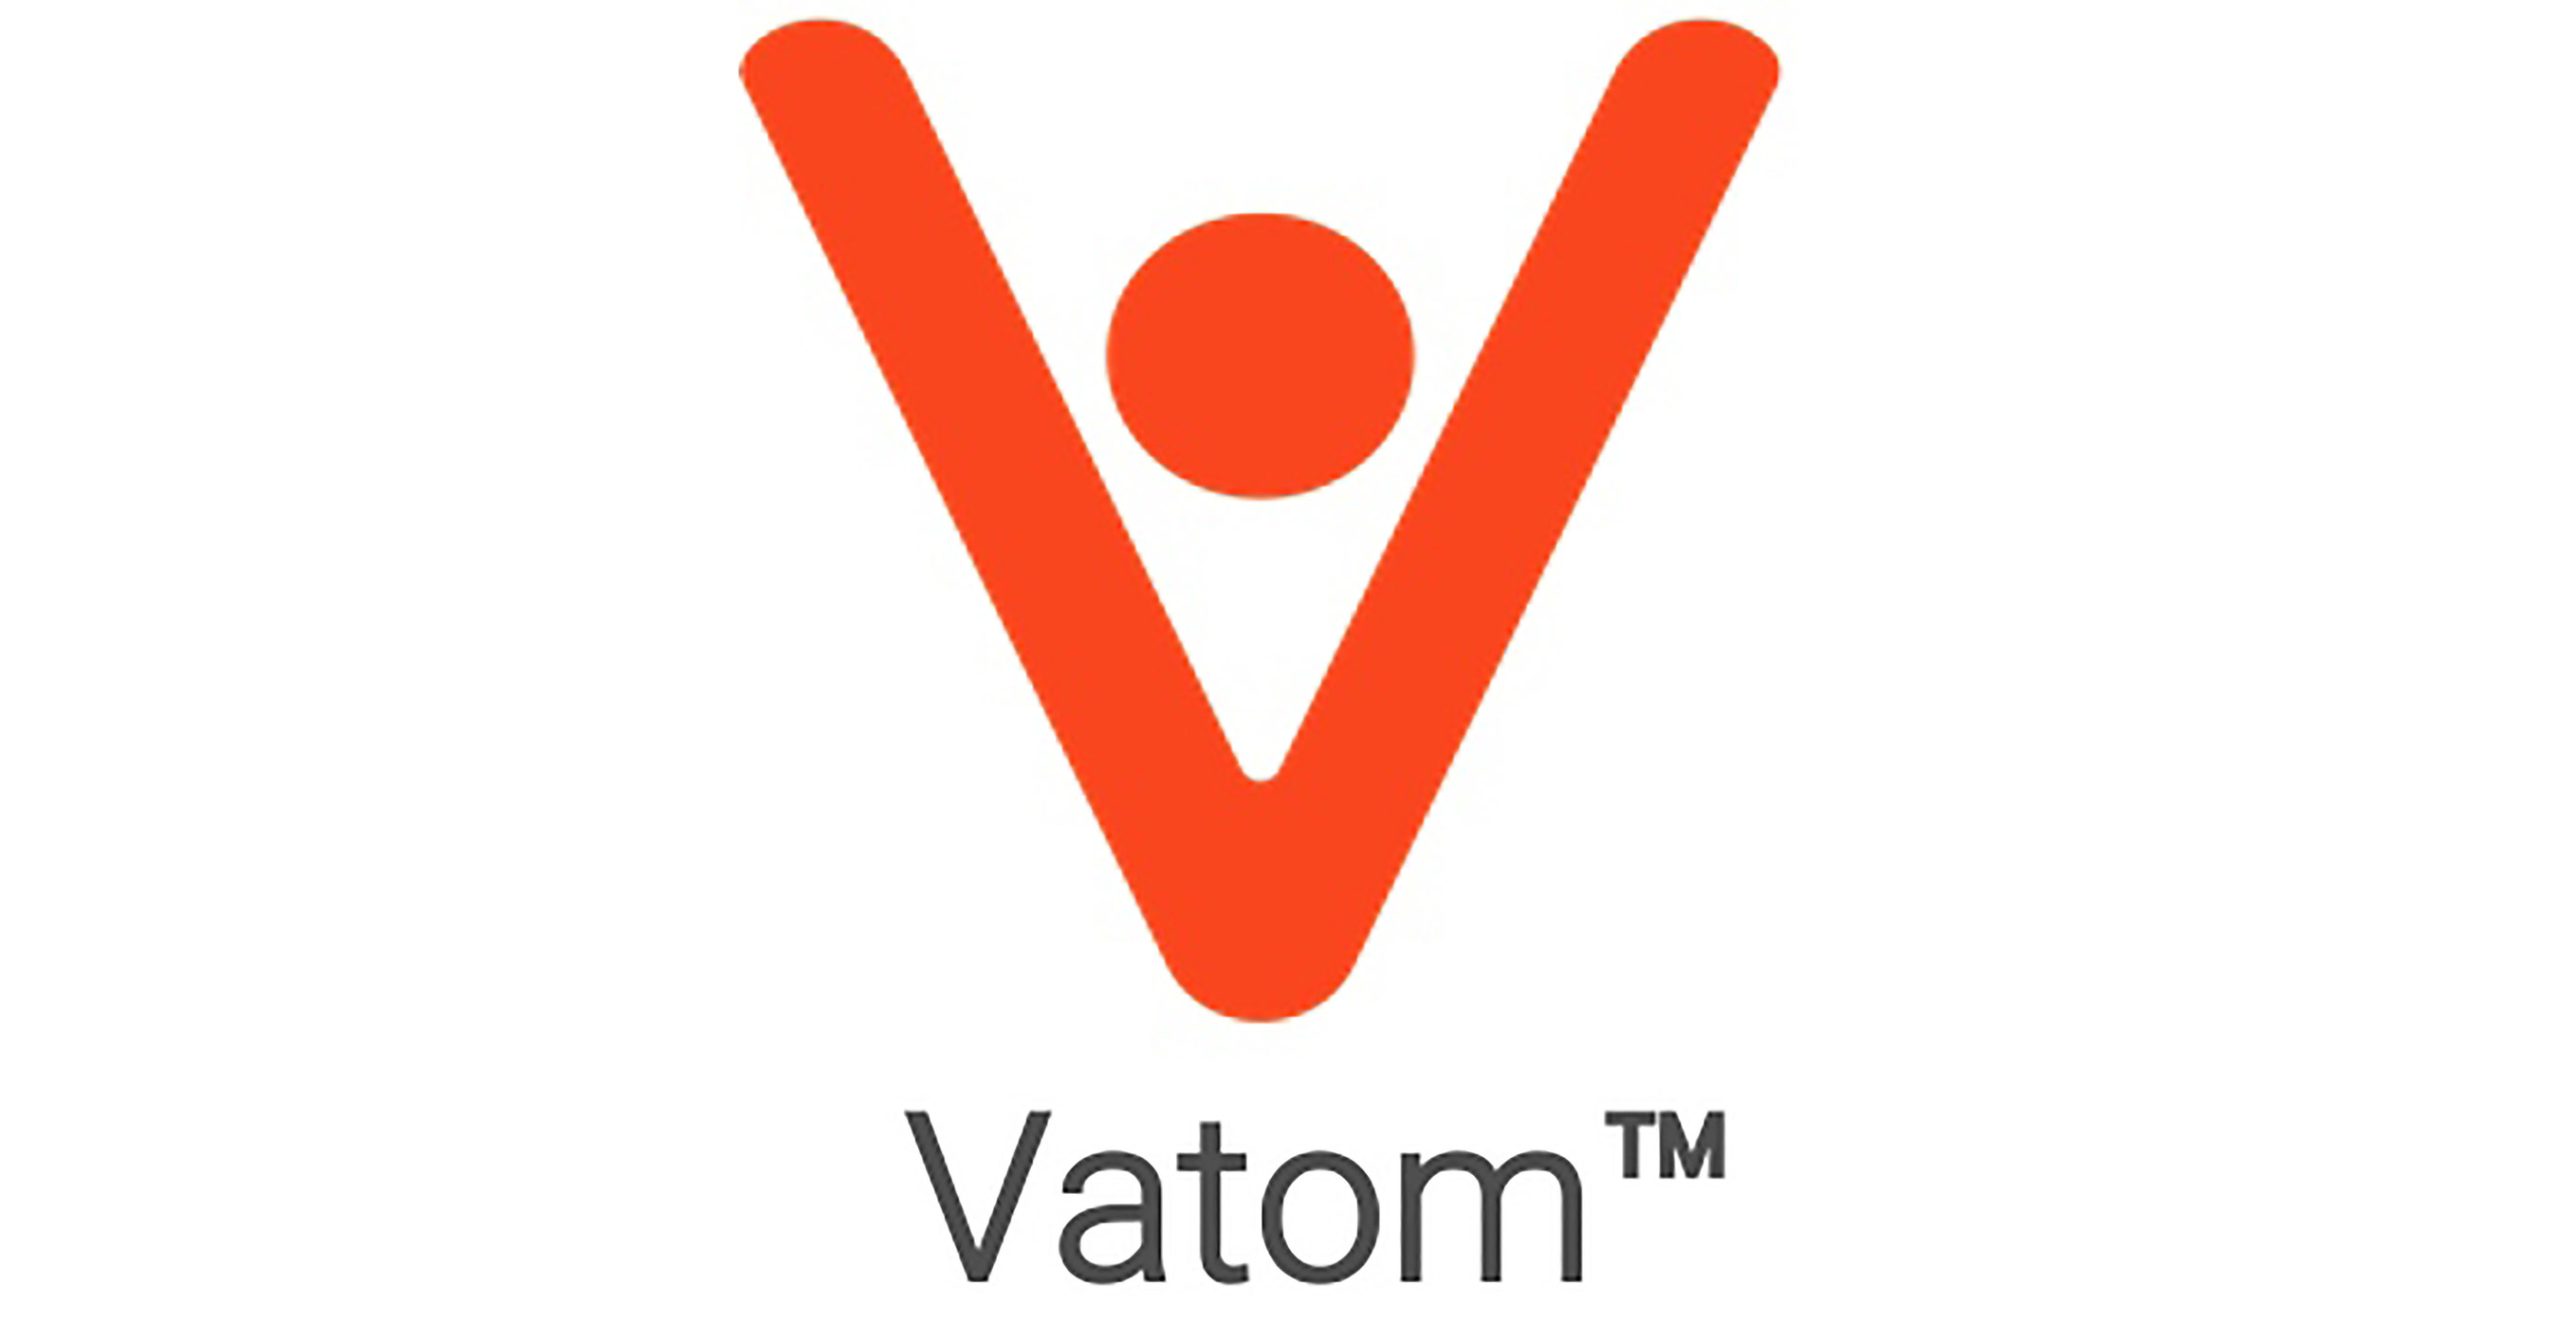 La plataforma Web3 líder, Vatom, se asocia con Premiere Music Experiences, se prepara para desatar el futuro de las experiencias de los fans y anuncia su expansión internacional